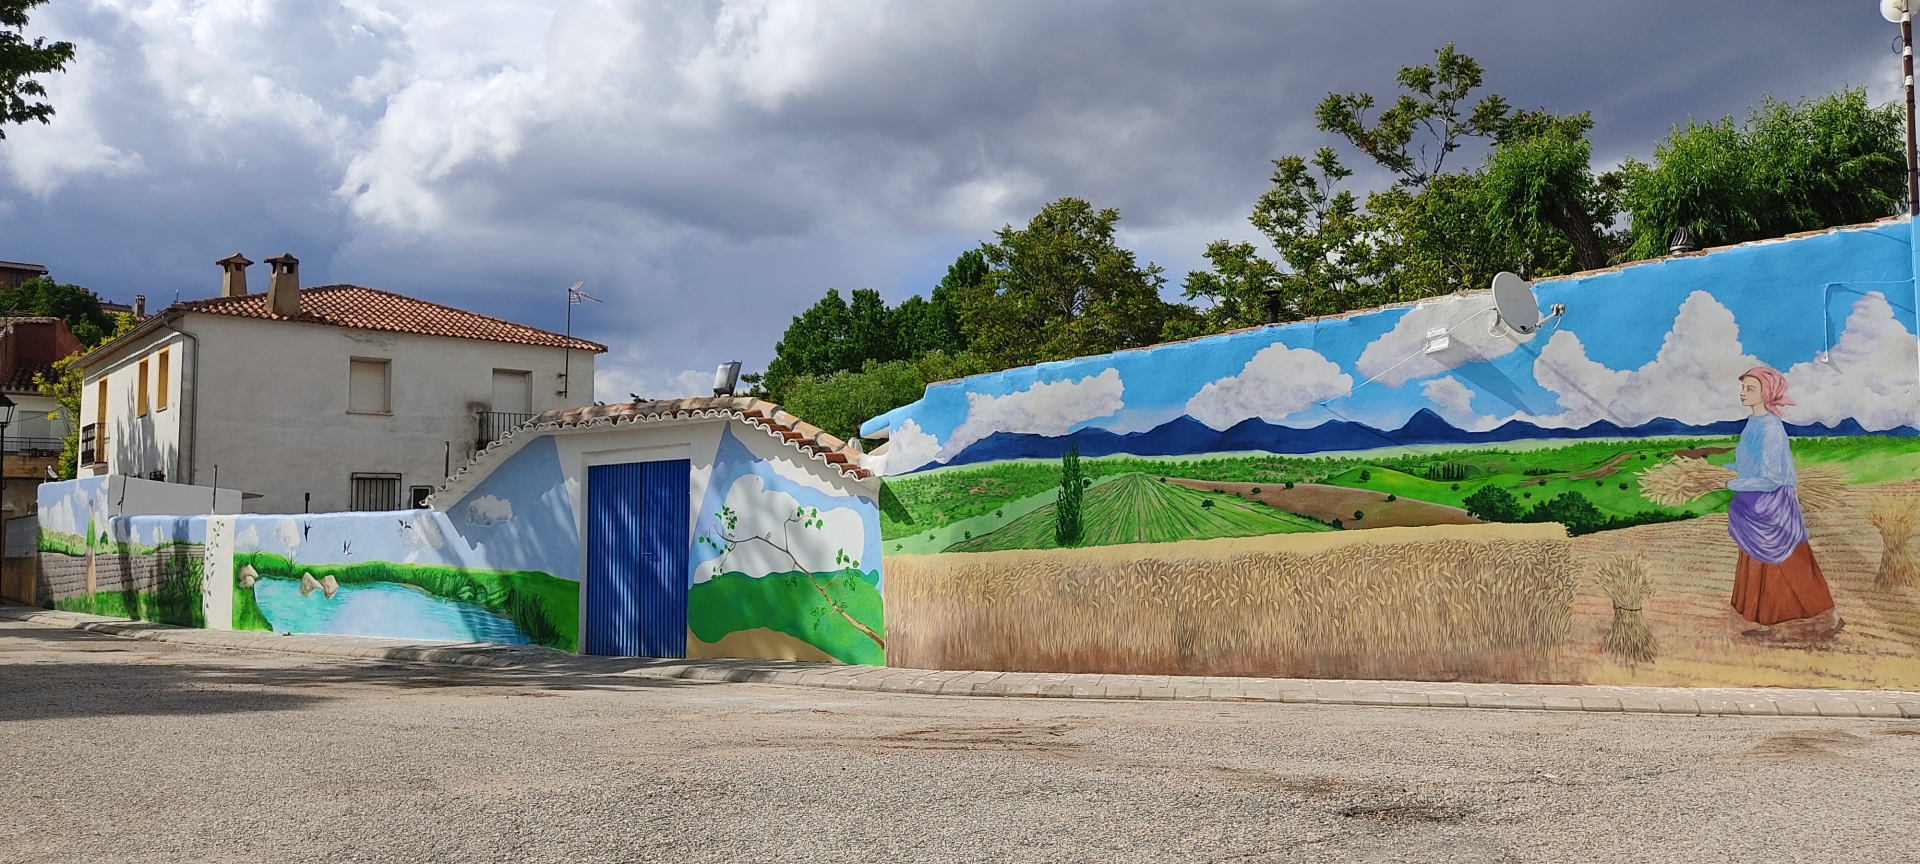 Albacete Ahora Mural en Masegoso